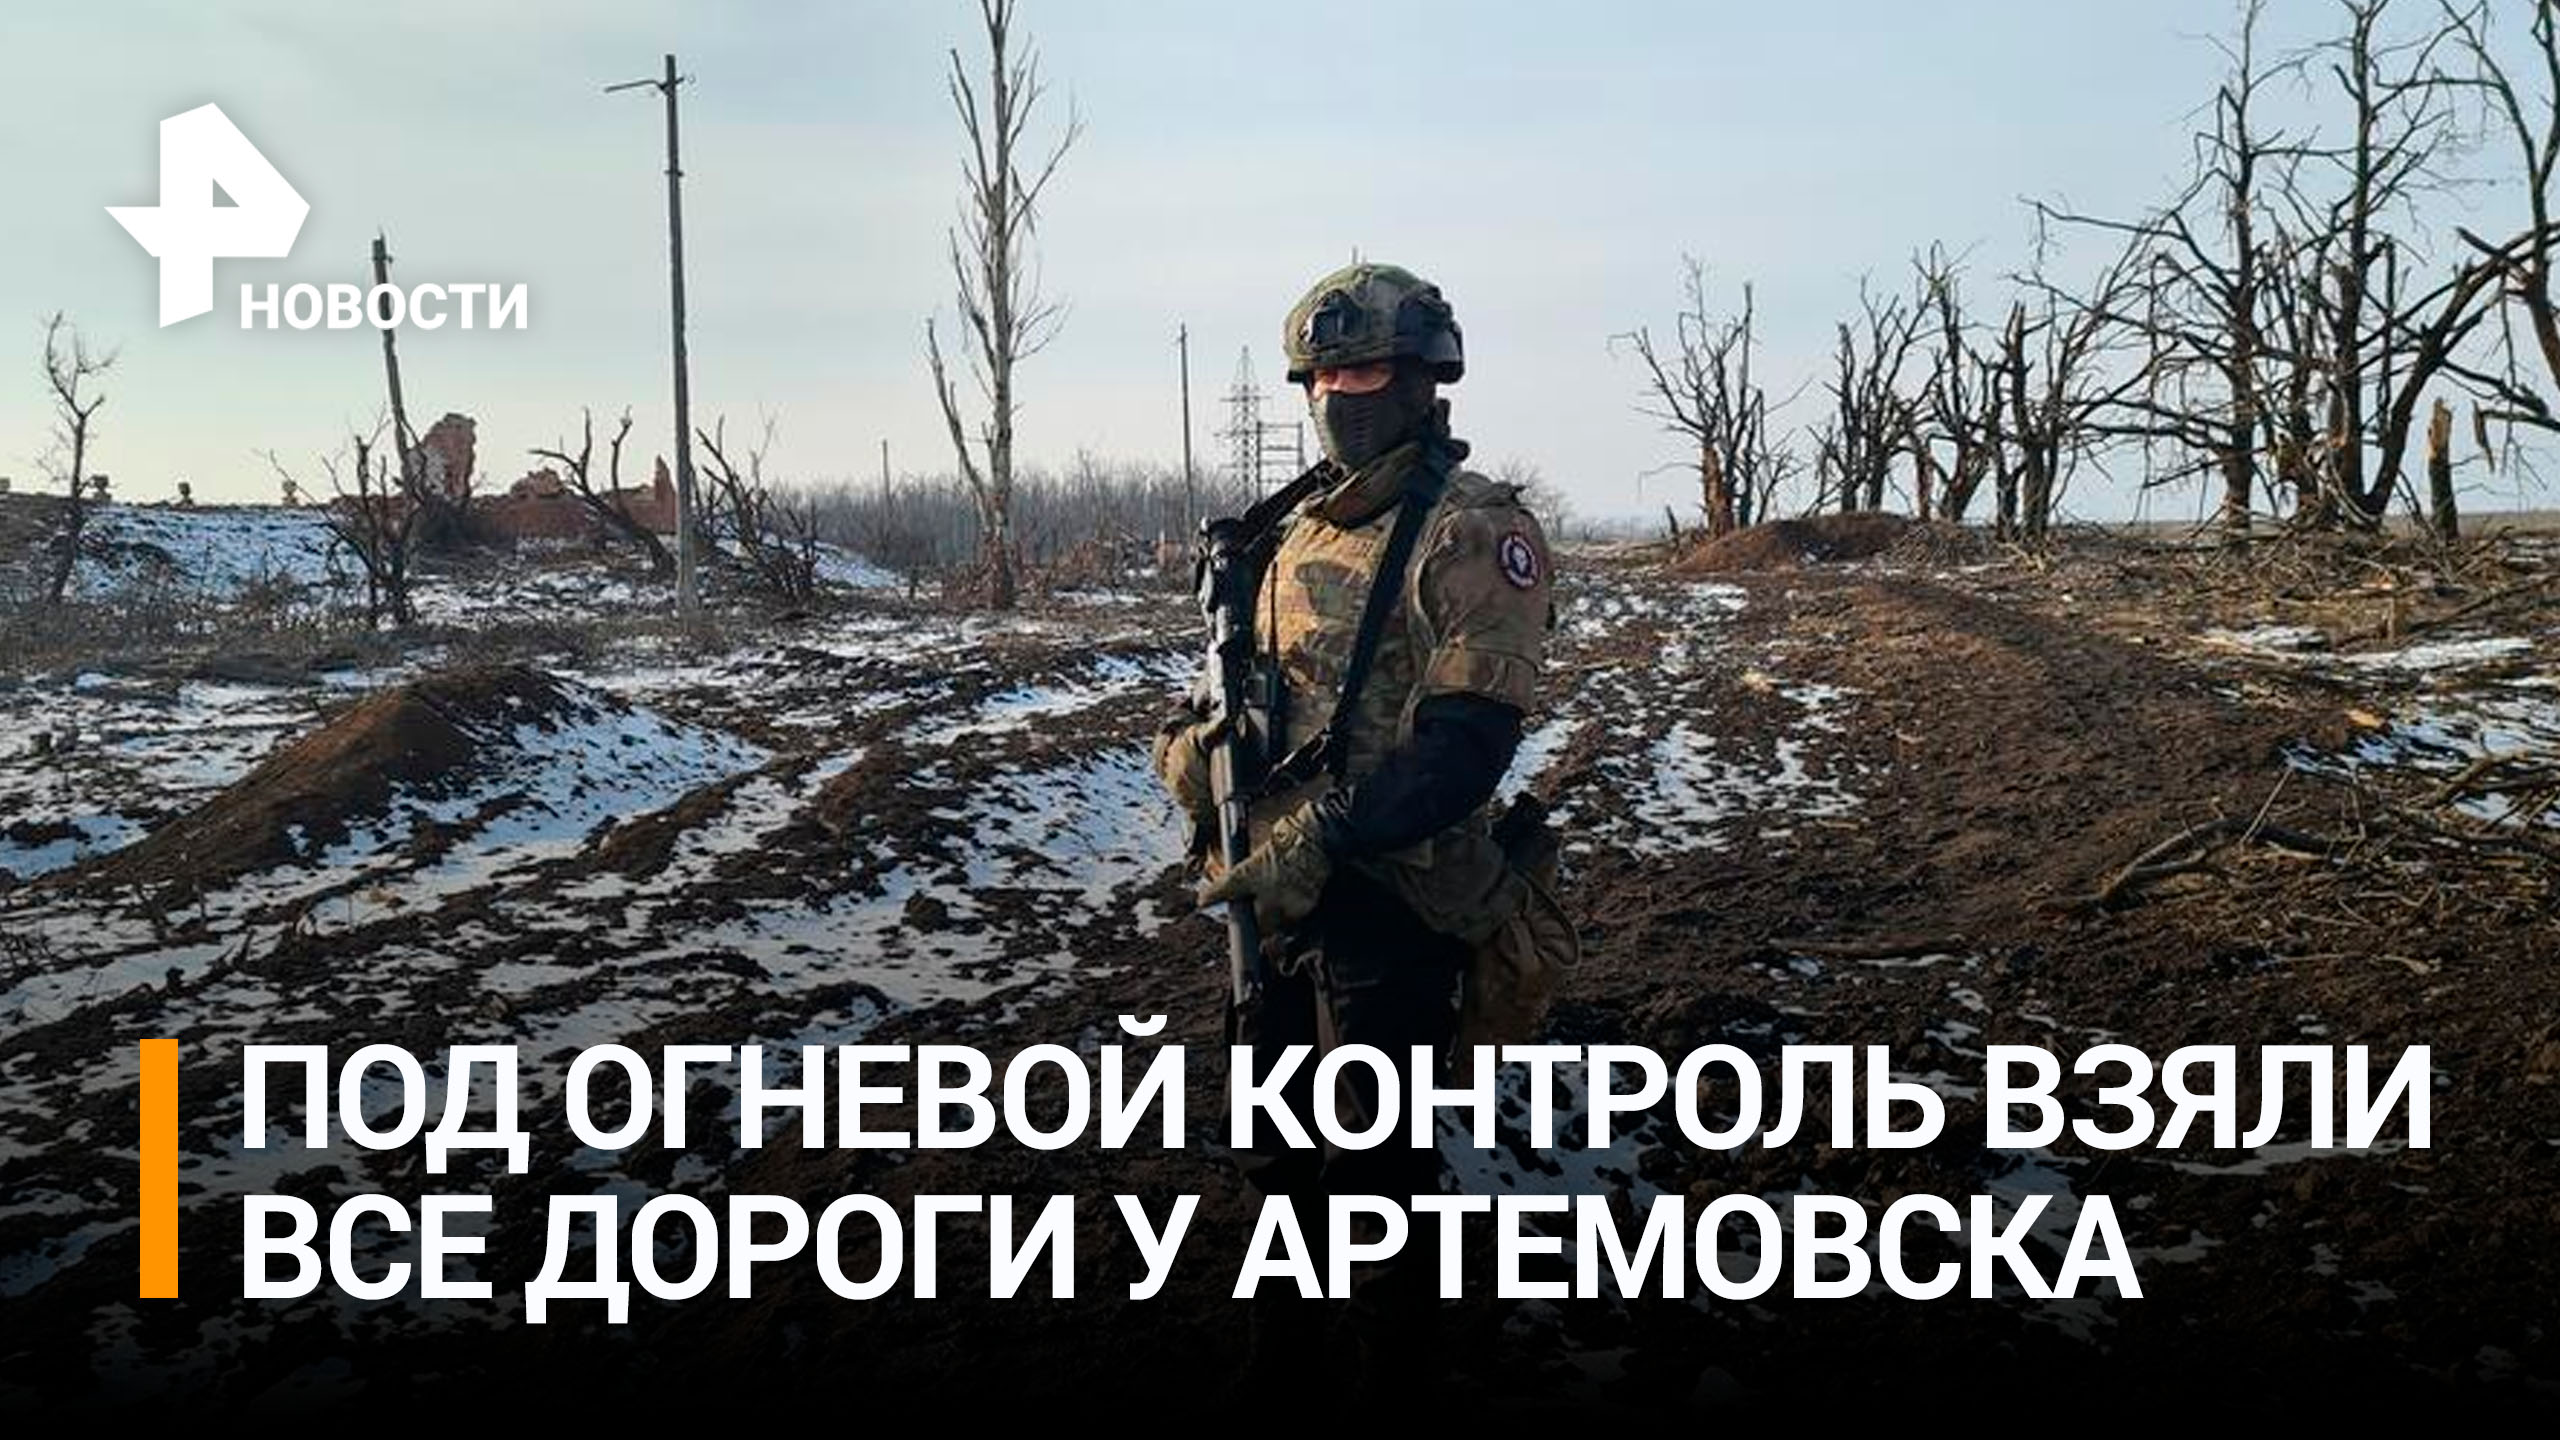 Российские военные взяли под огневой контроль все дороги у Артемовска / РЕН Новости